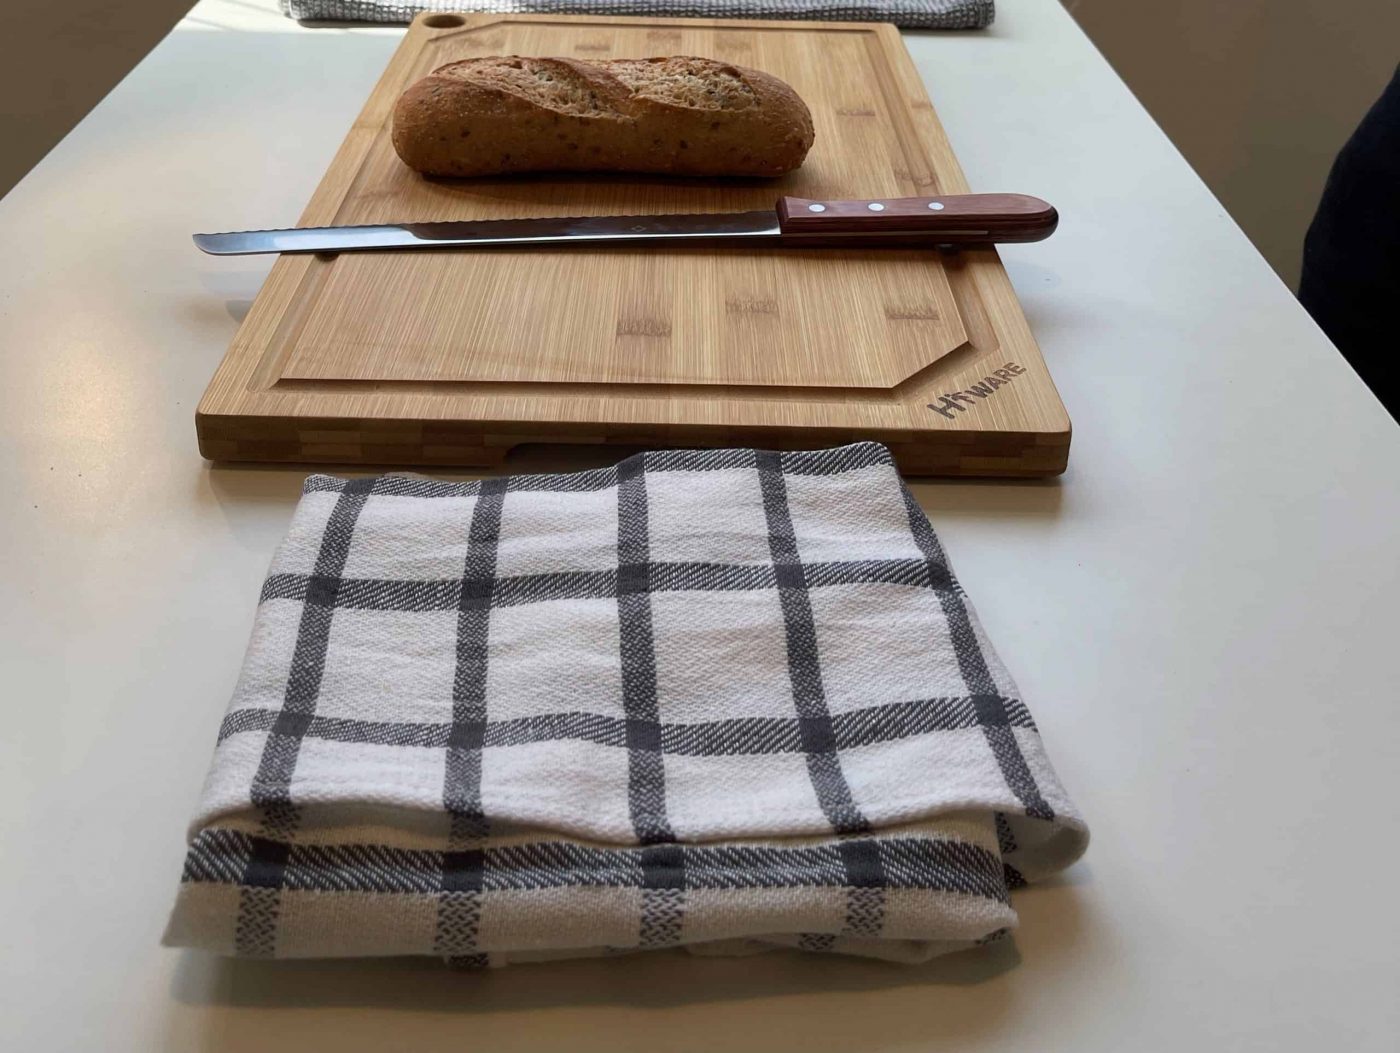 bread knife on a cutting board